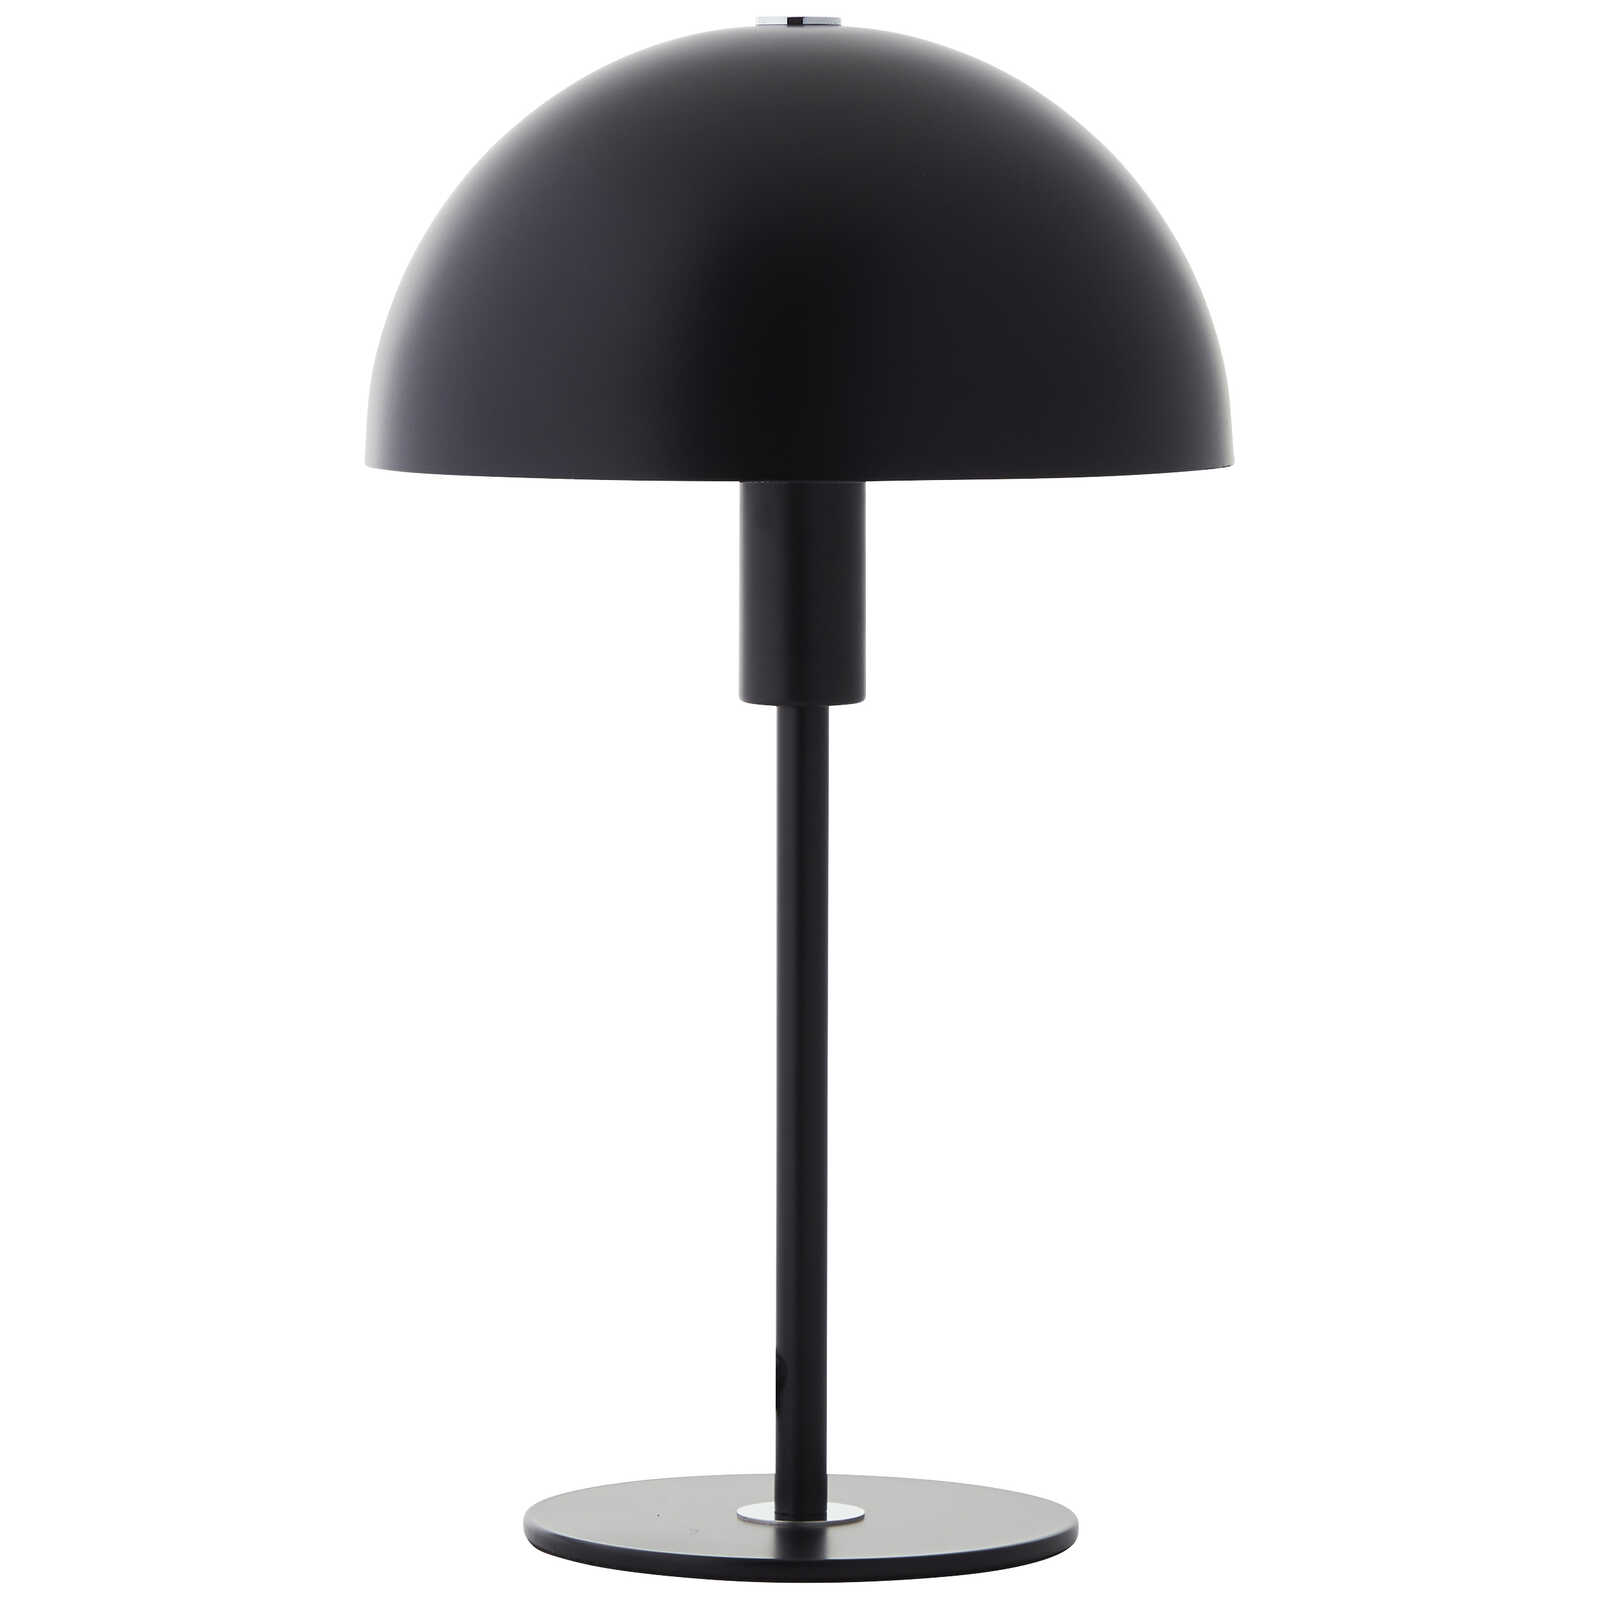             Metal table lamp - Lasse 4 - Black
        